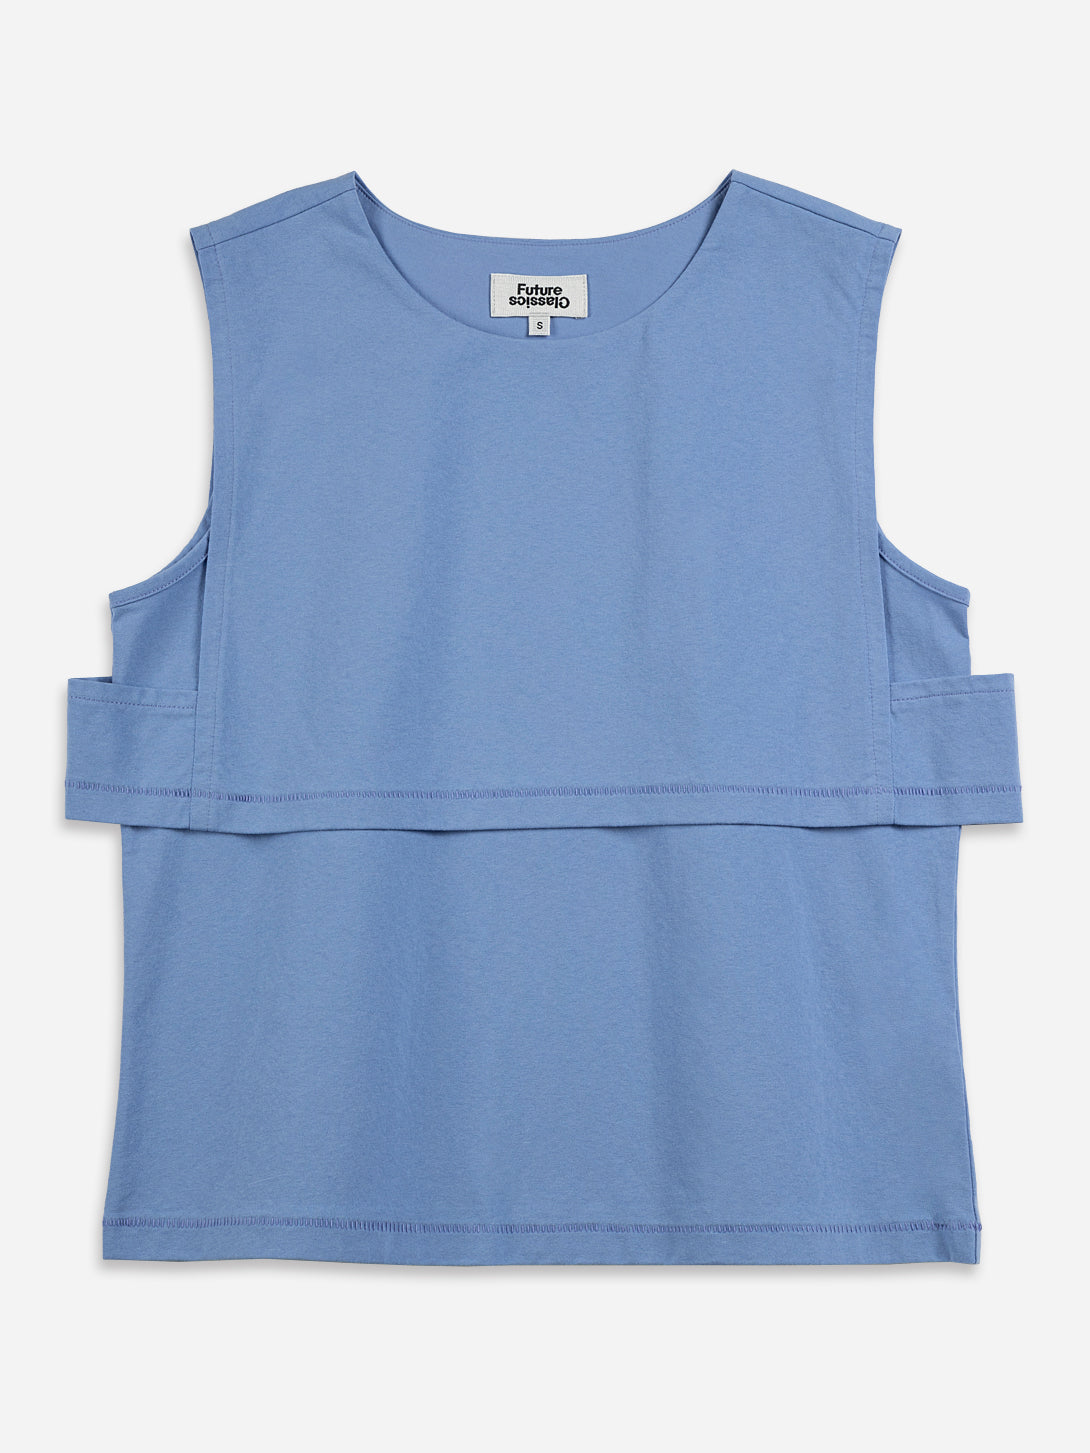 Little Boy Blue Double Layer Tank Womens Sleeveless Summer Shirt